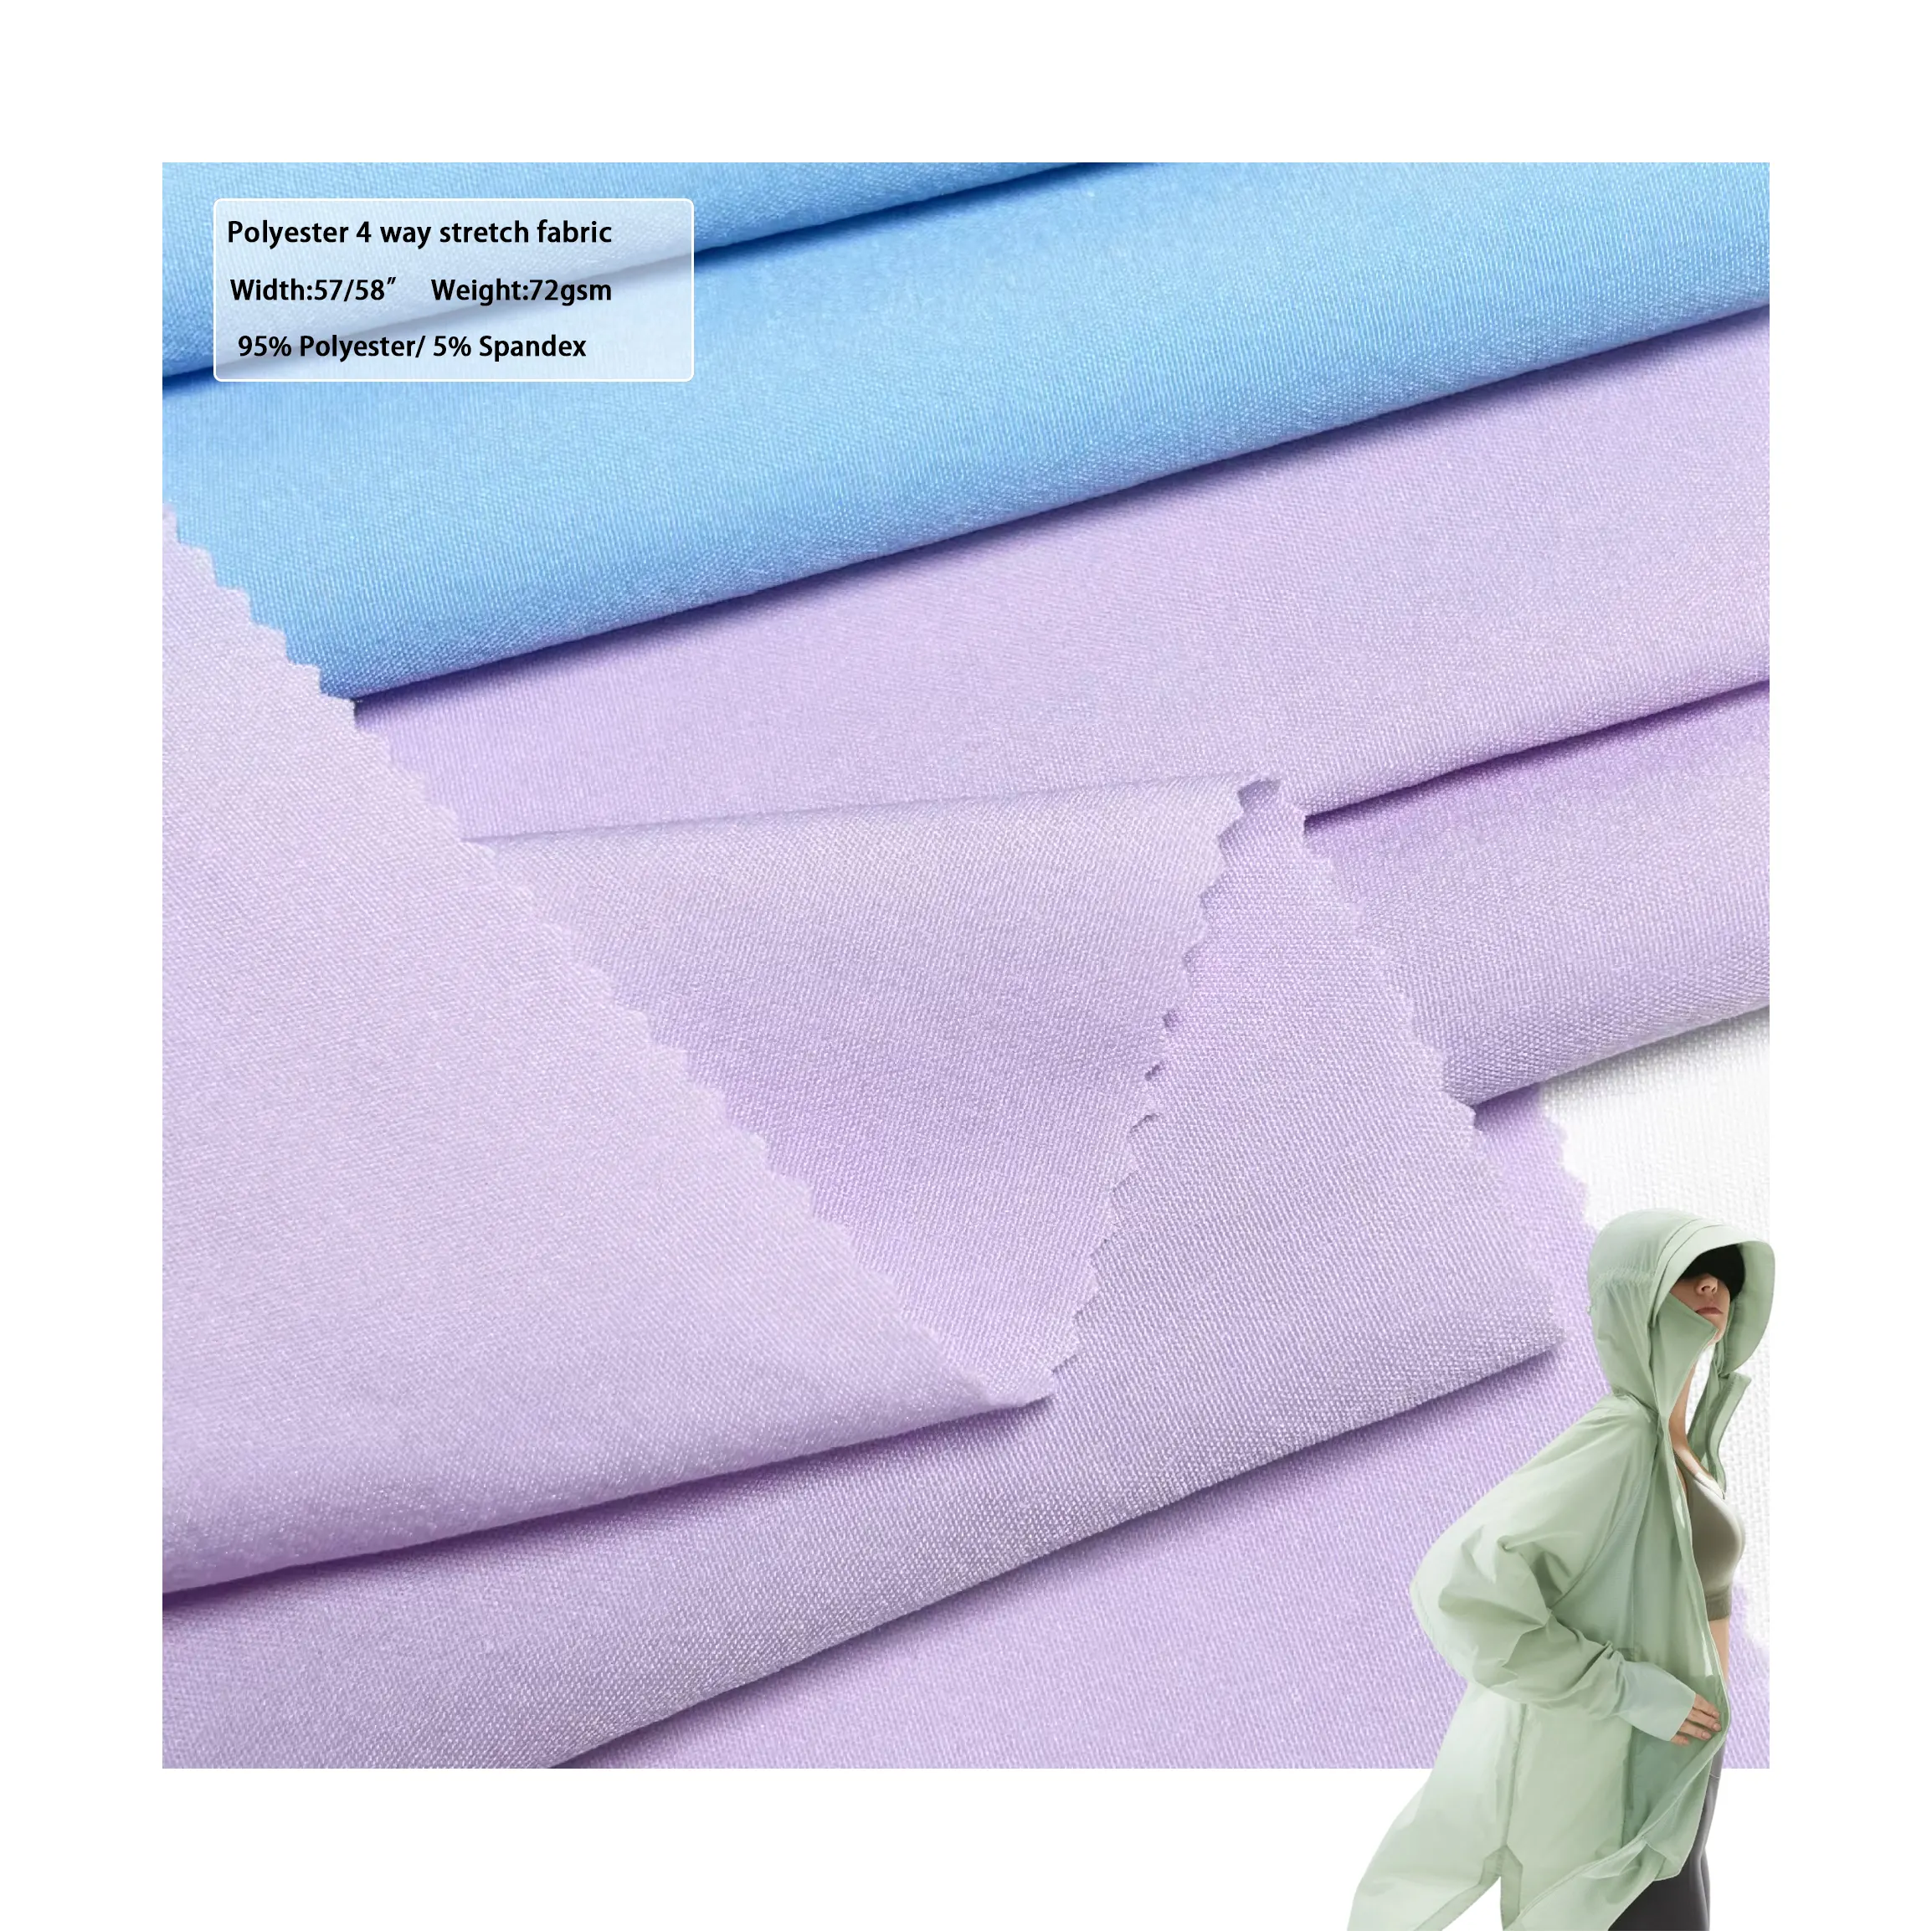 Stock de telas al por mayor, material de spandex, impermeable, tejido de nailon elástico de 4 vías para ropa deportiva